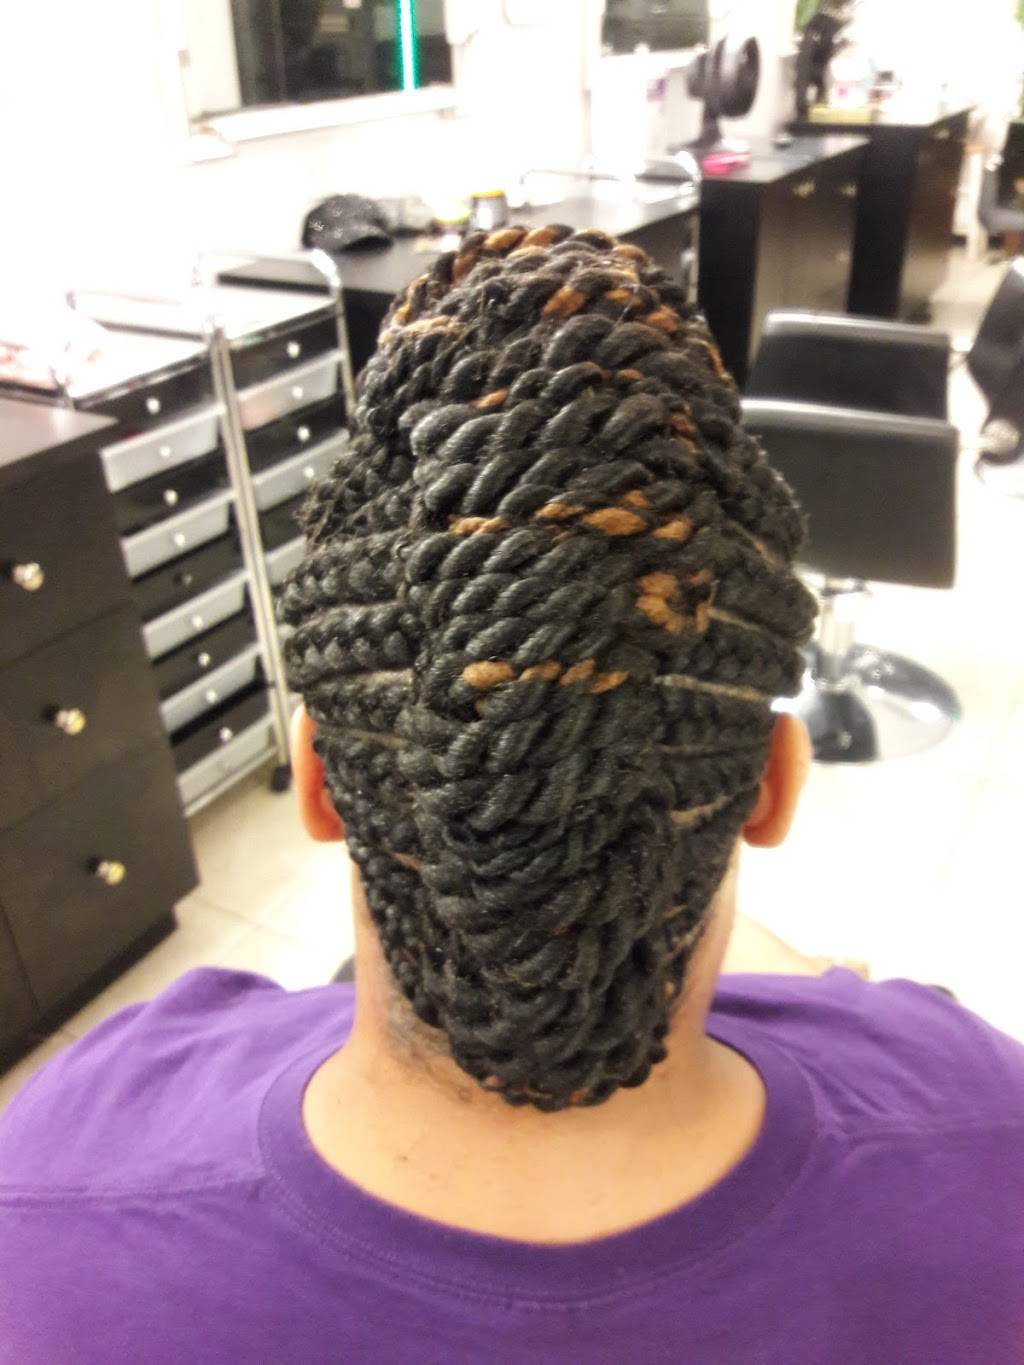 Penda African Hair Braiding | 4229 Louisburg Rd Ste 113, Raleigh, NC 27604 | Phone: (919) 264-3810